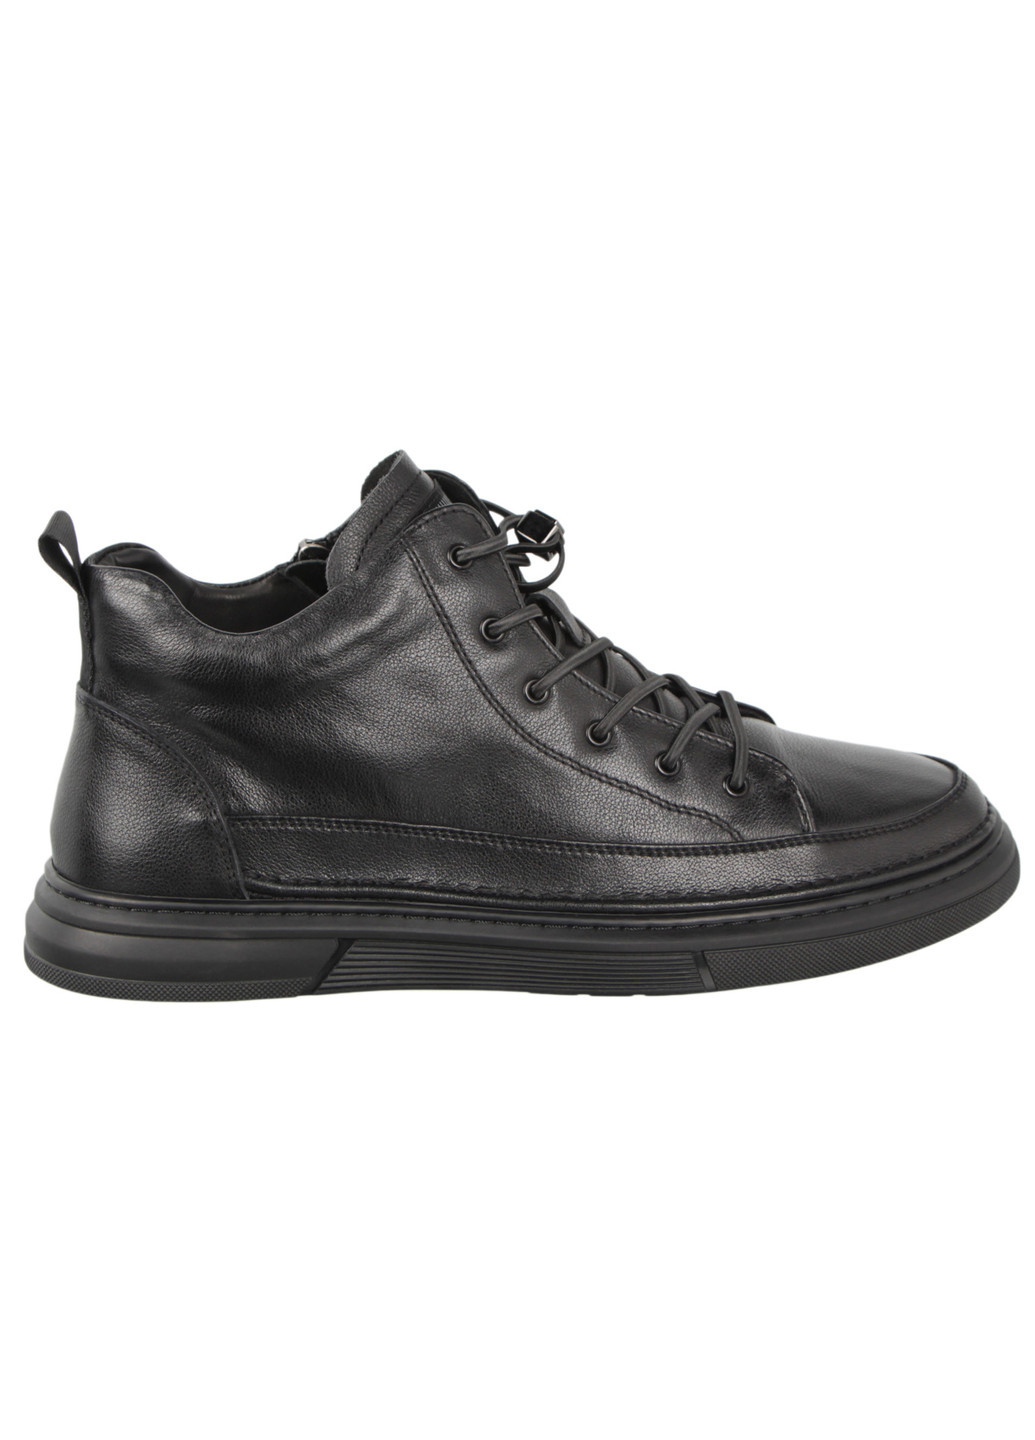 Черные осенние мужские ботинки 197809 Cosottinni